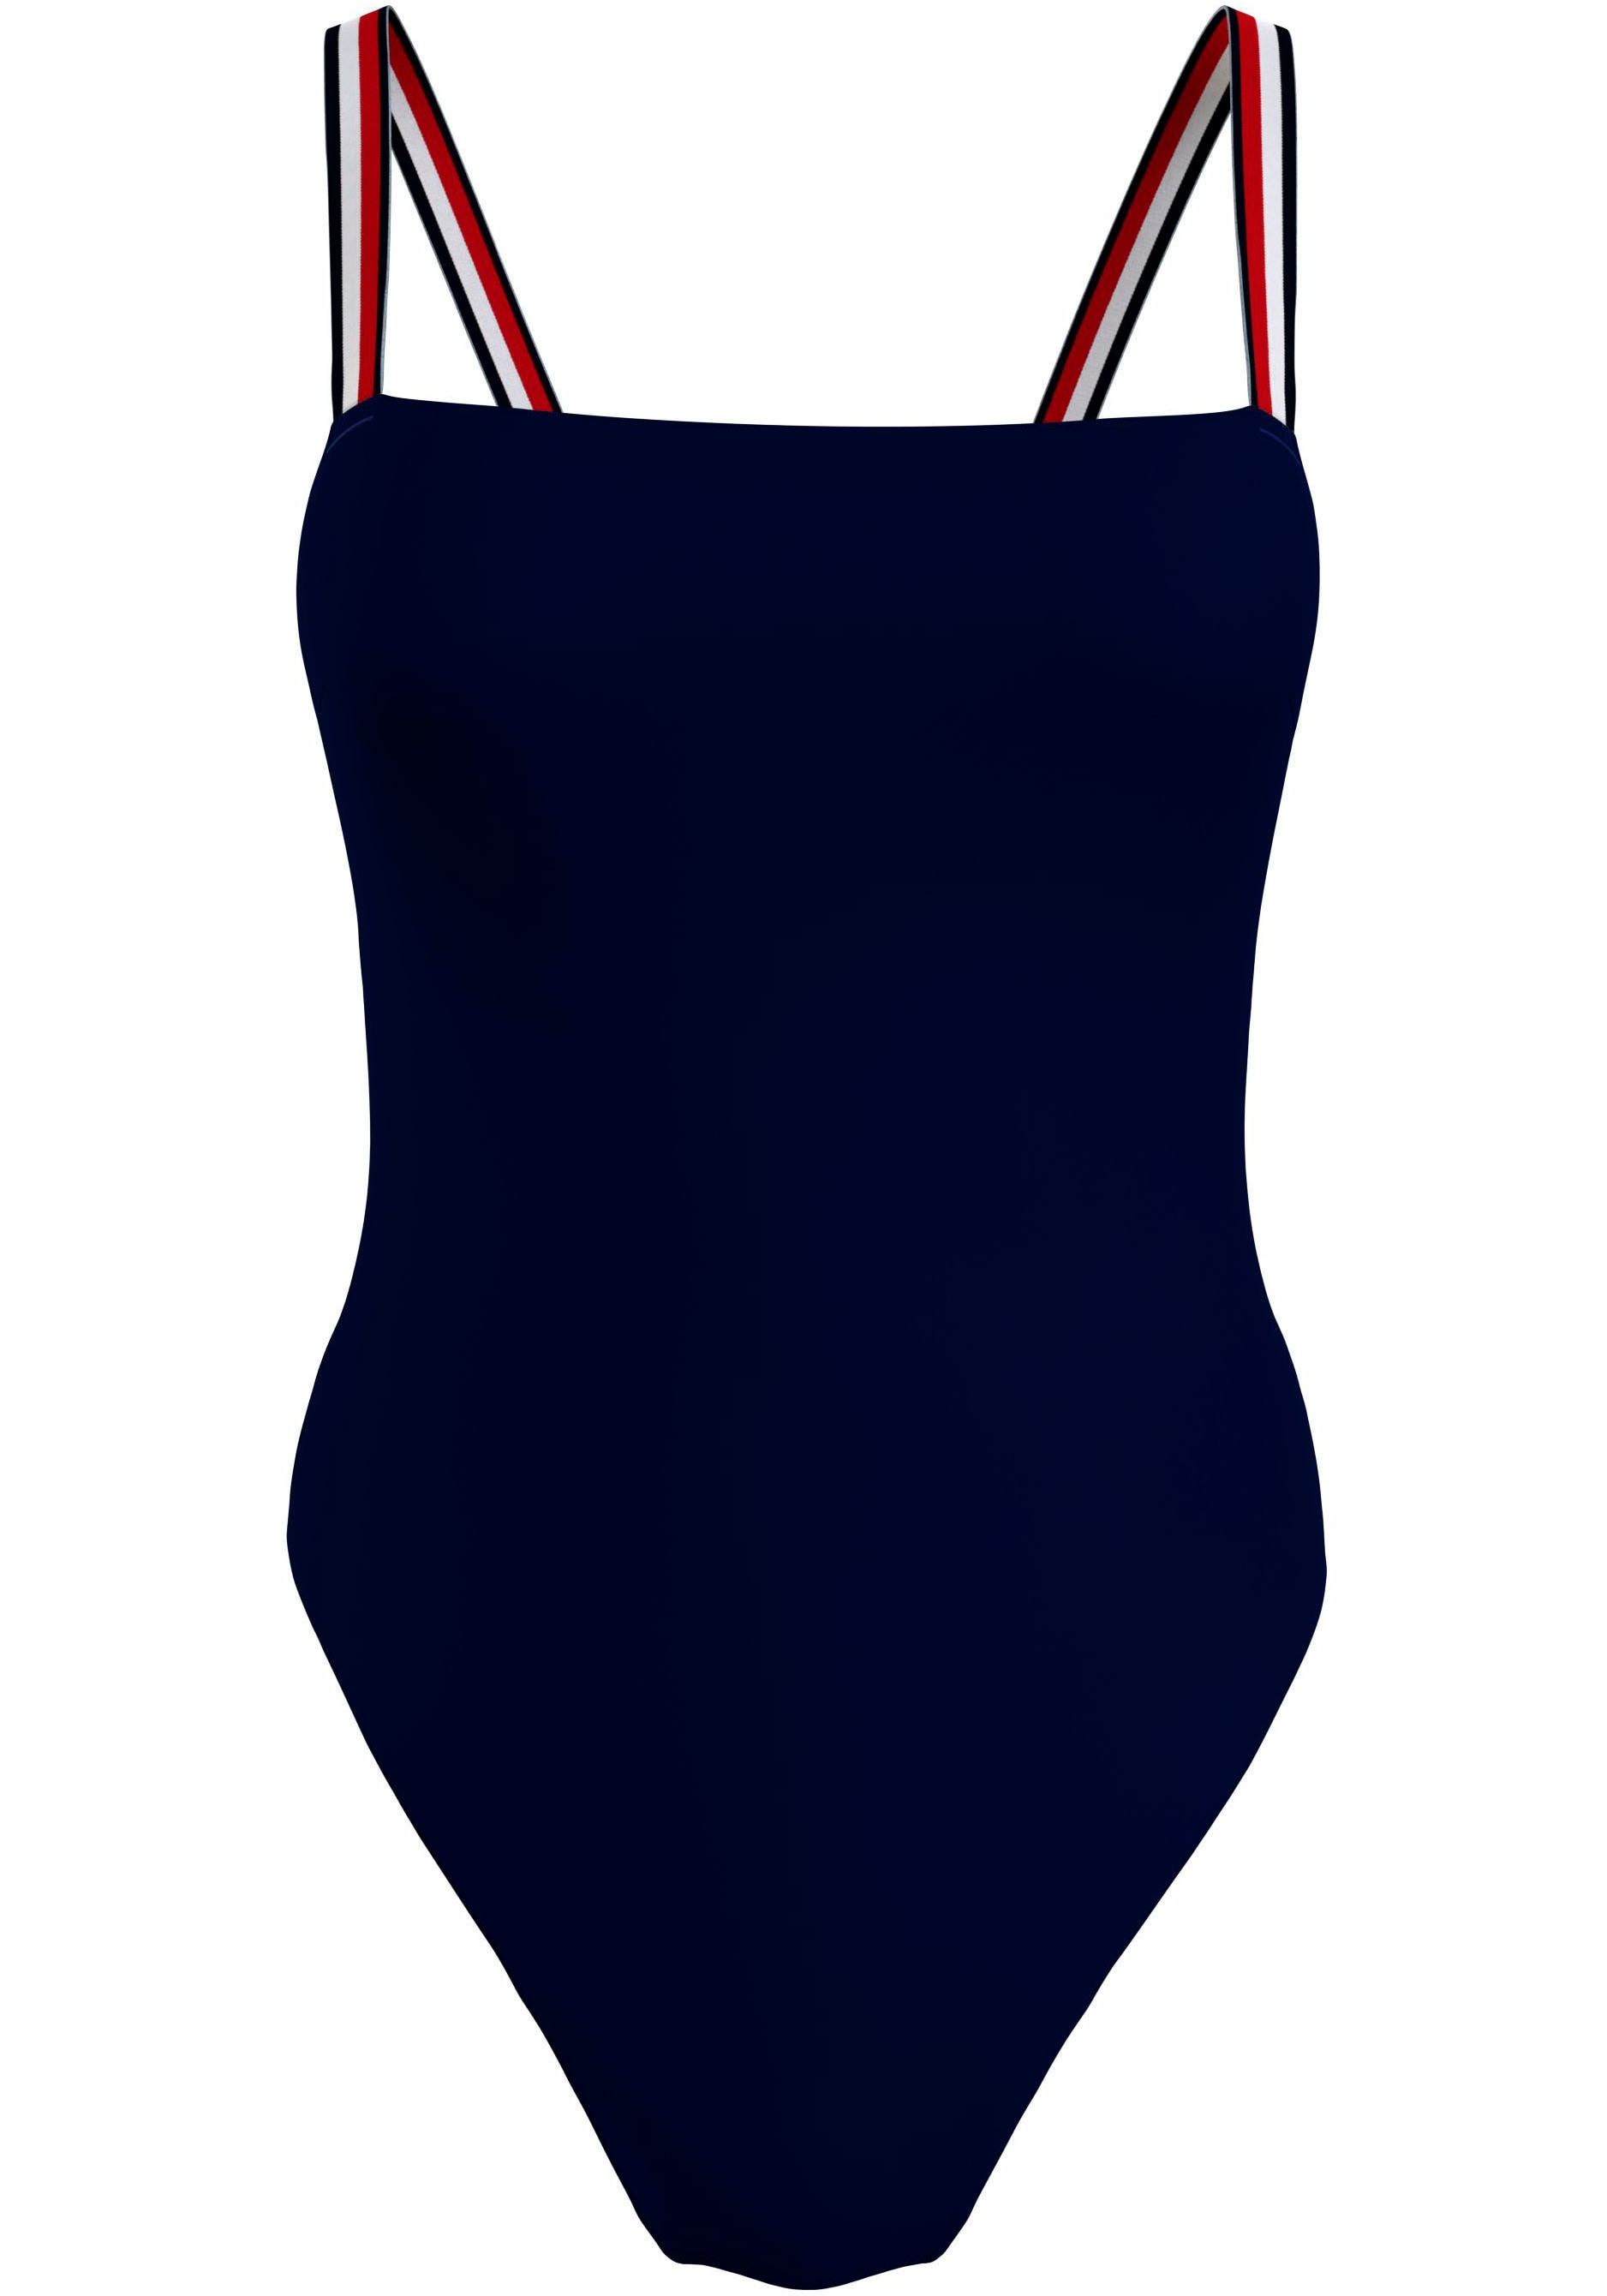 »TH STRAIGHT bei Badeanzug NECK Swimwear Hilfiger-Branding PIECE«, Tommy Tommy ONE mit Hilfiger